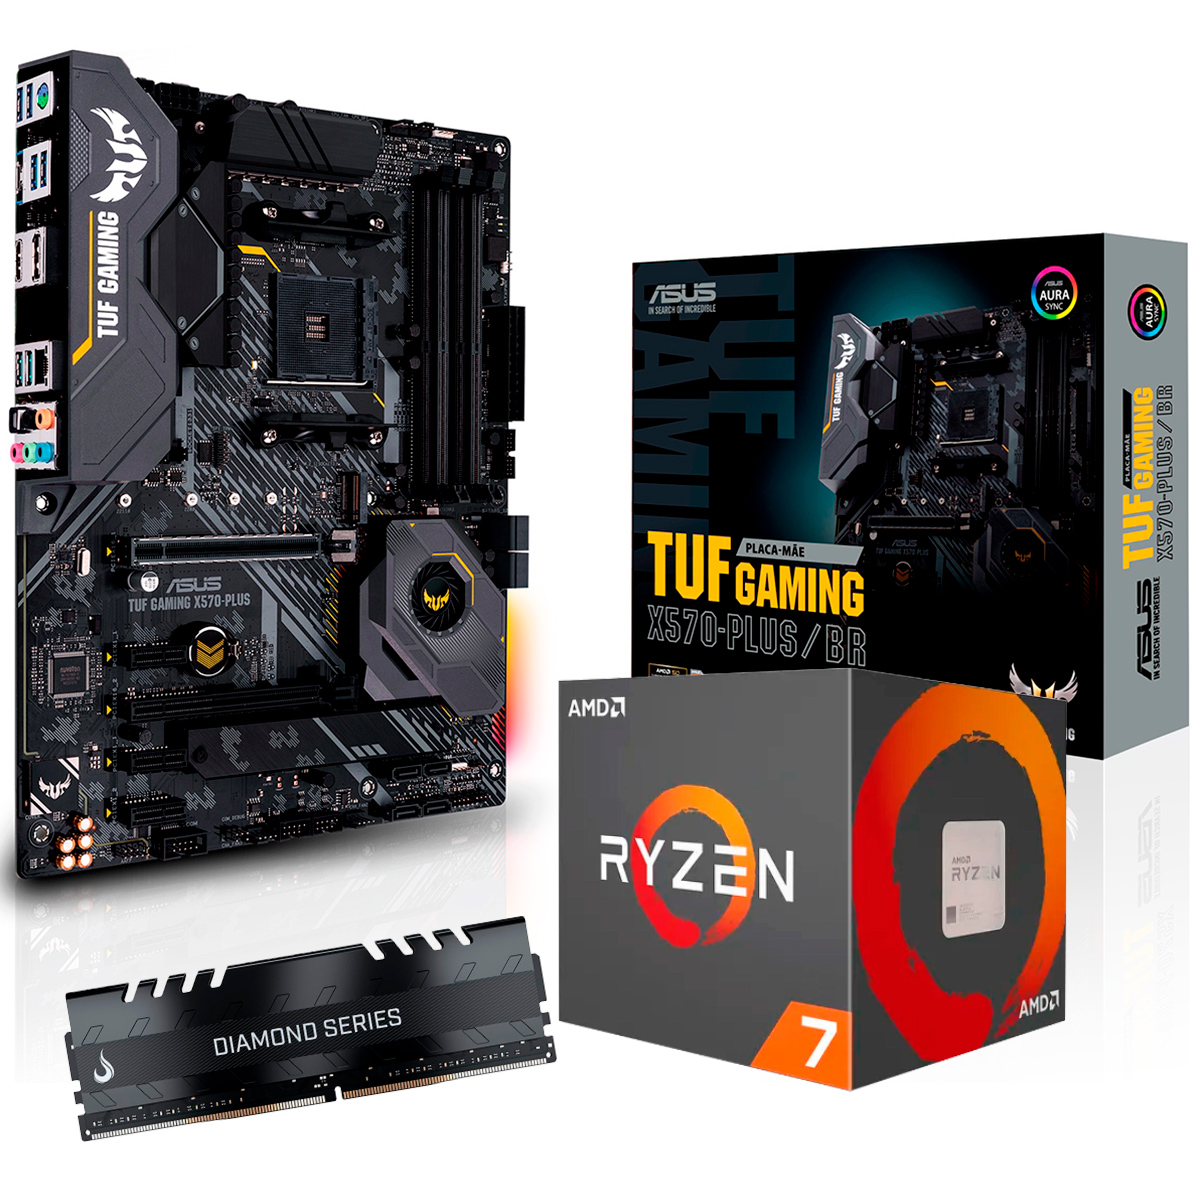 Kit Upgrade AMD Ryzen™ 7 3800X + Asus TUF GAMING X570 PLUS/BR